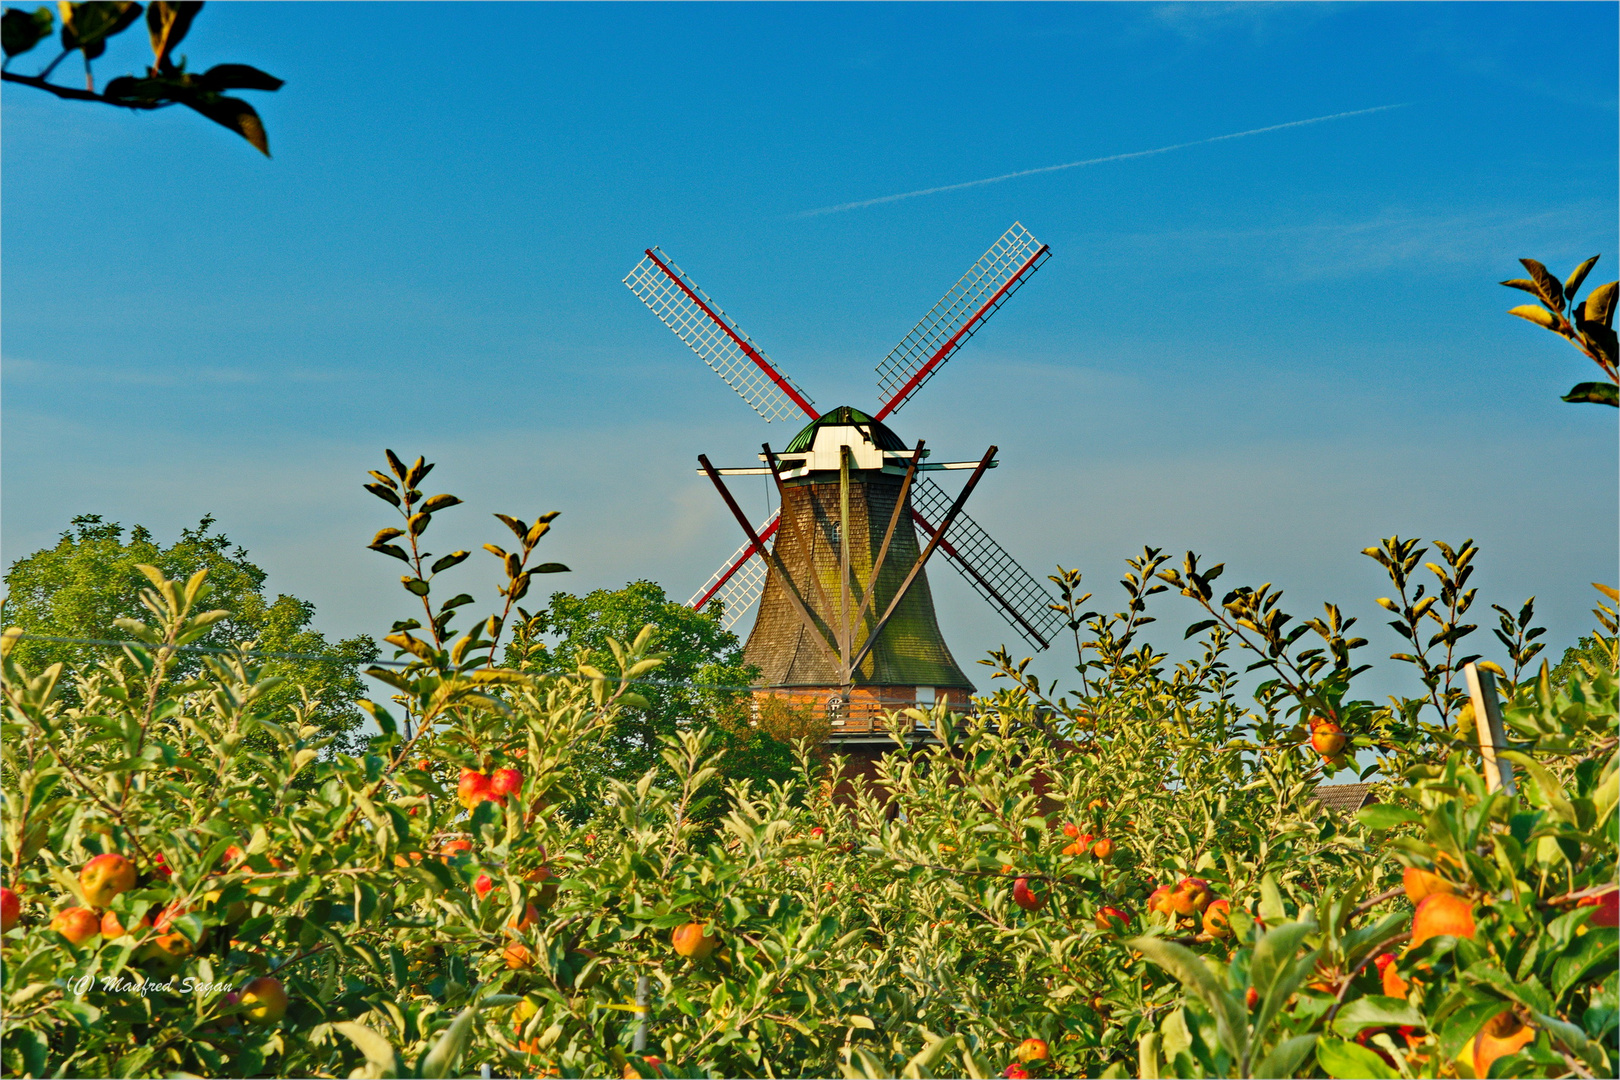 Galerieholländerwindmühle bei Jork im Alten Land